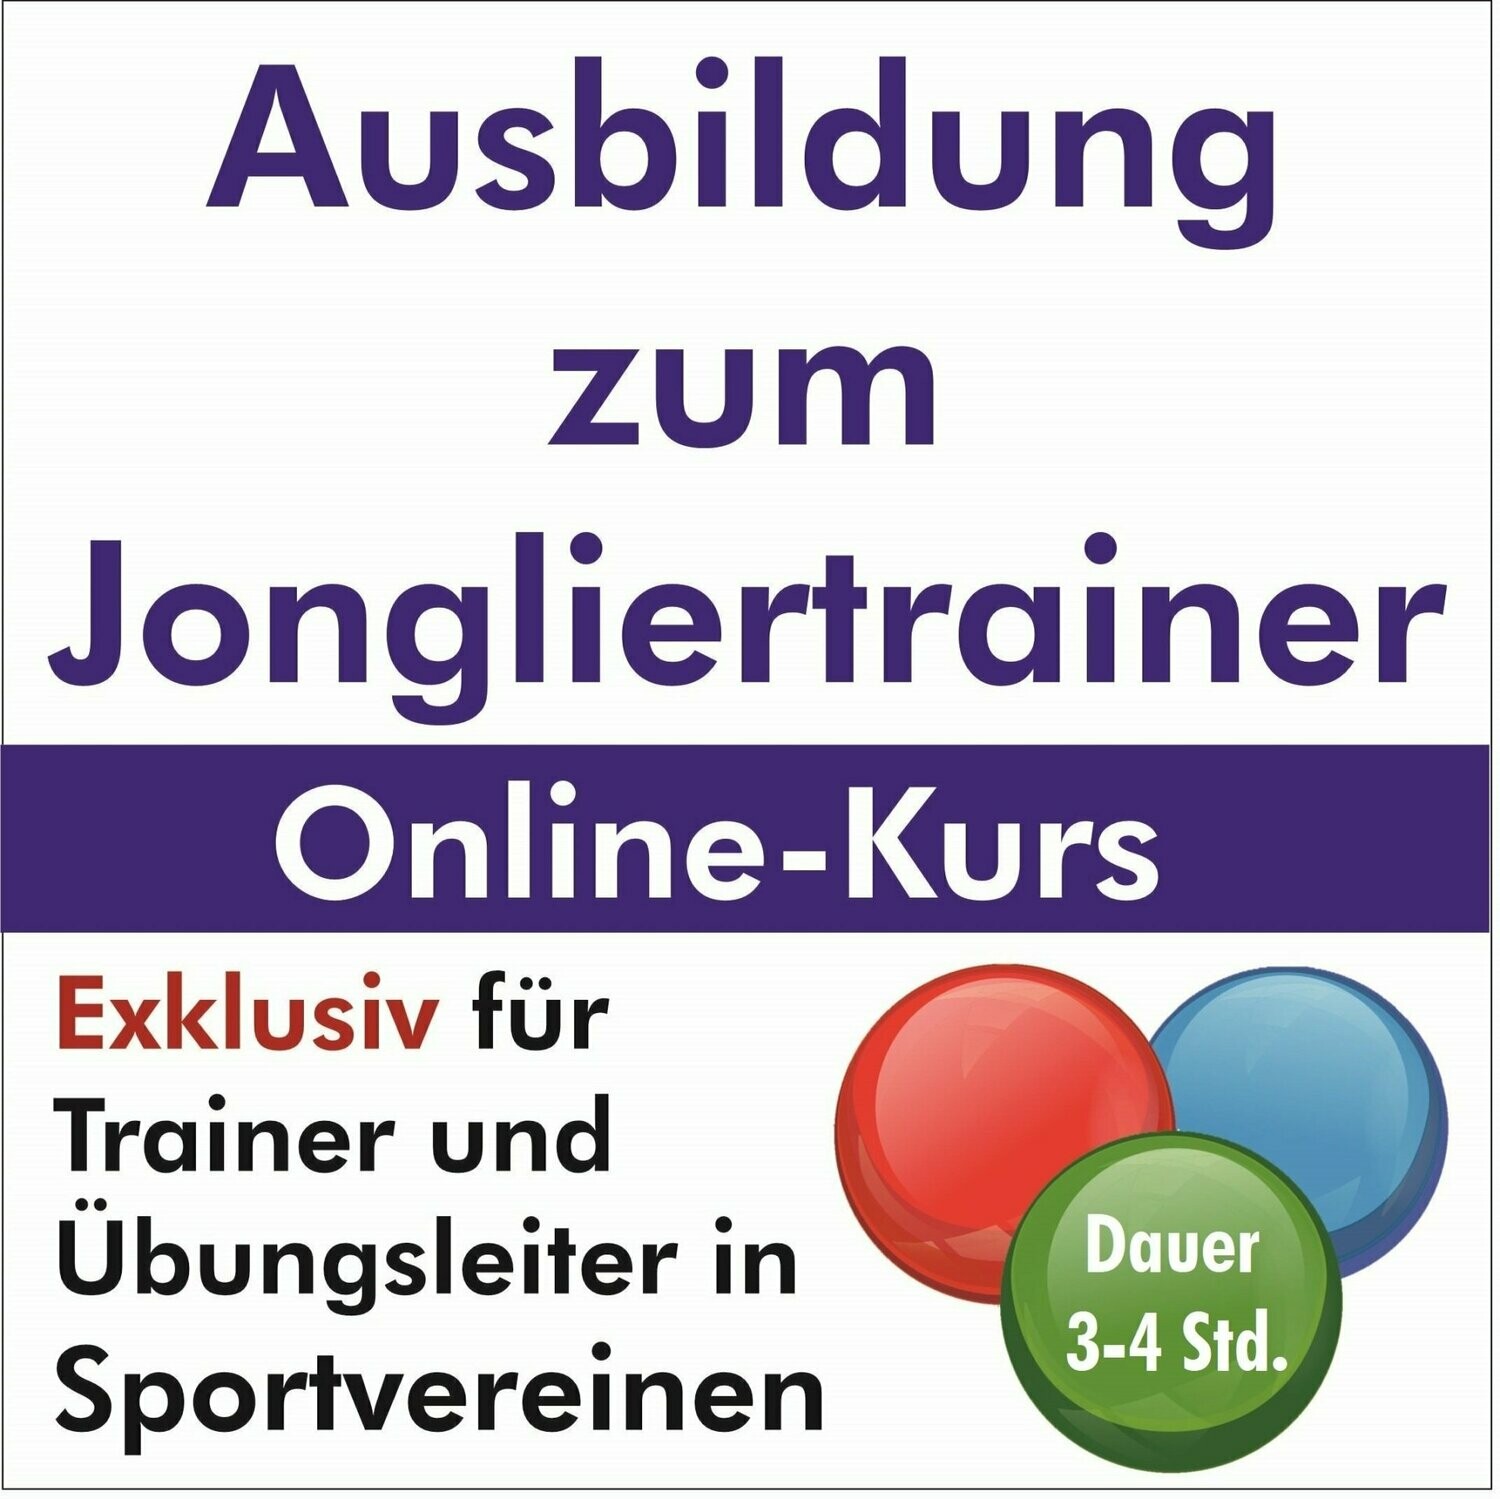 Ausbildung zum Jongliertrainer
exklusiv für Sportvereine / Übungsleiter >ONLINE-KURS<